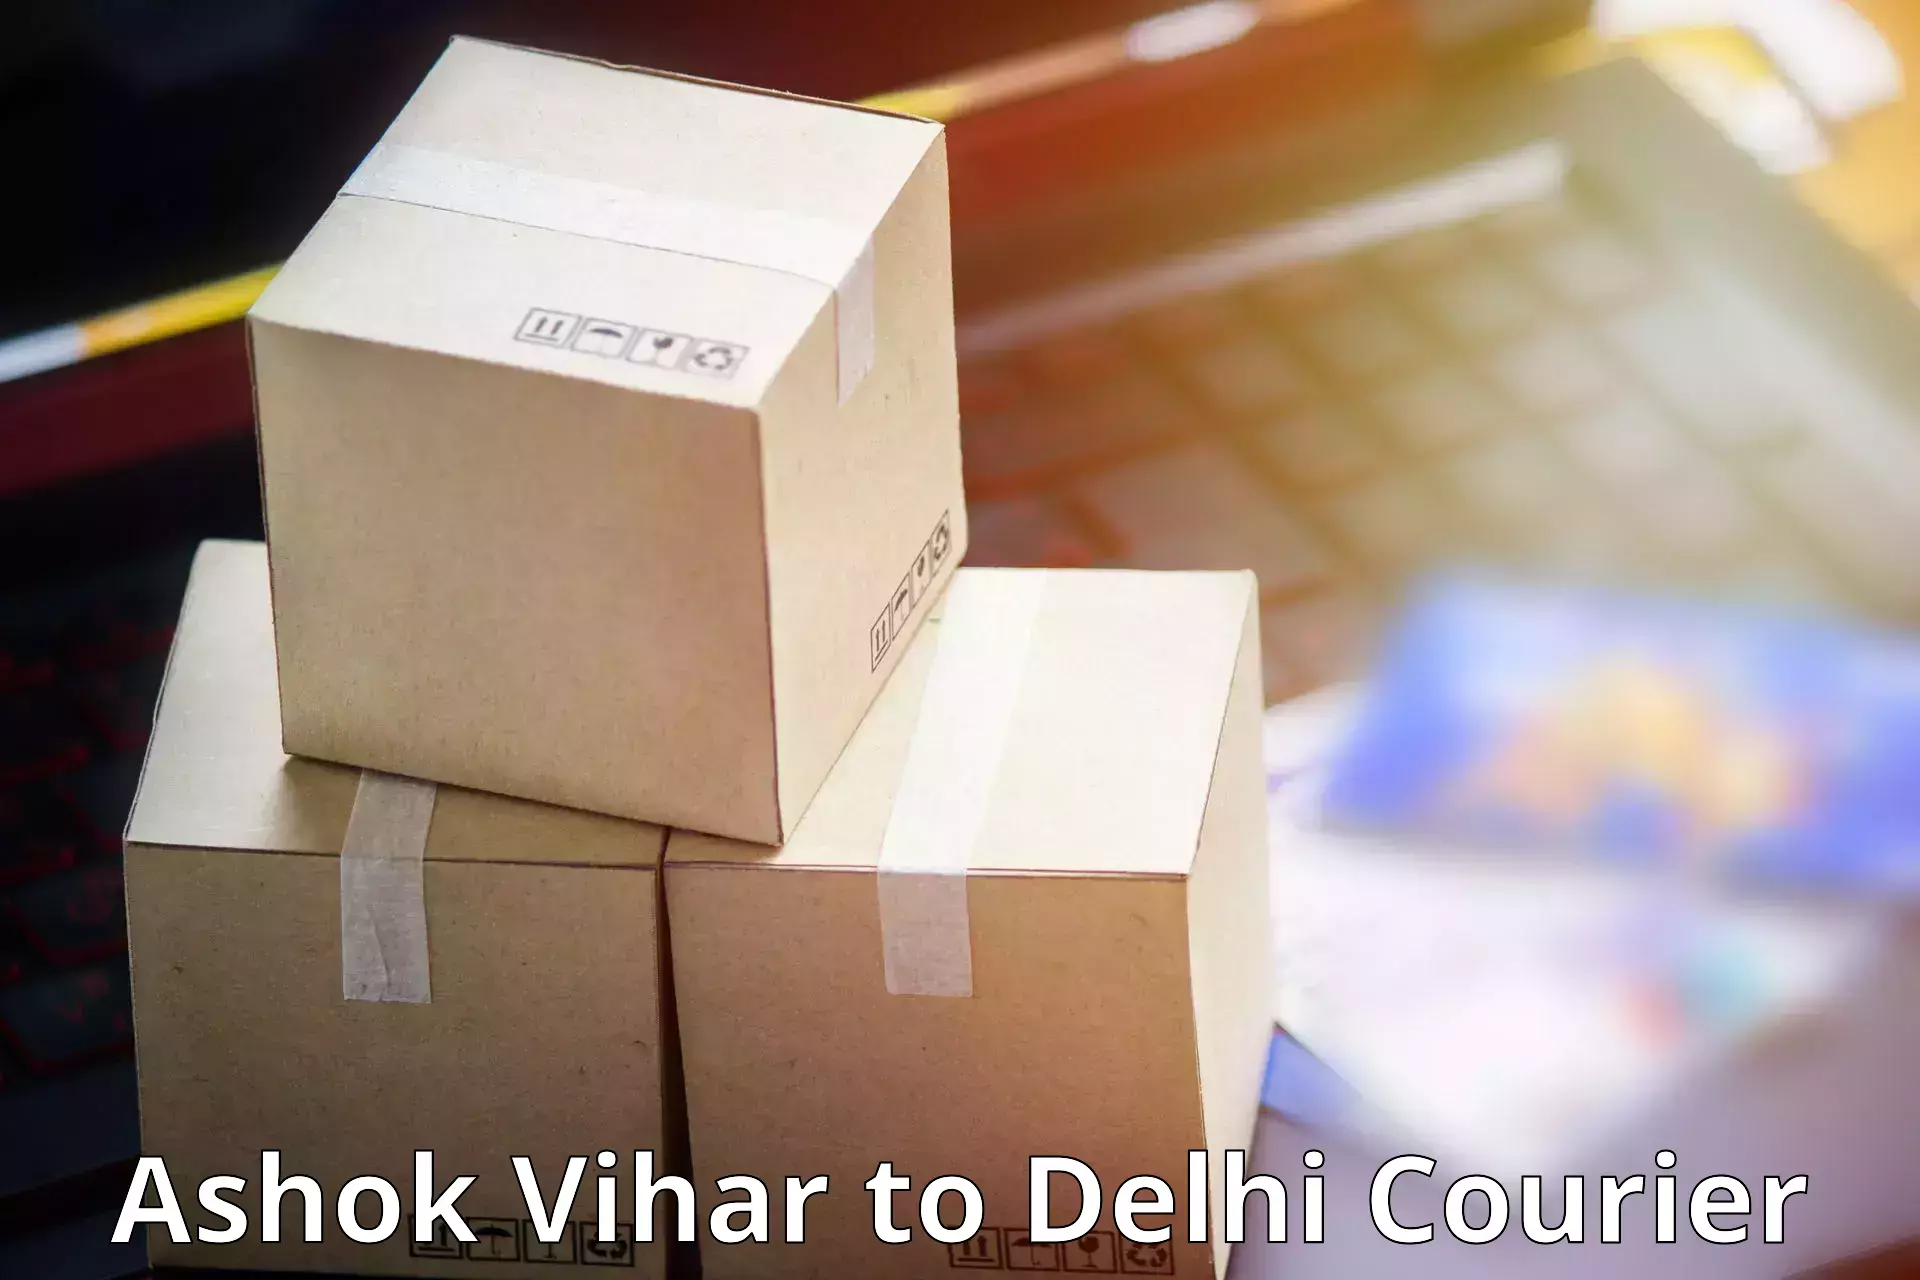 Professional parcel services Ashok Vihar to Jhilmil